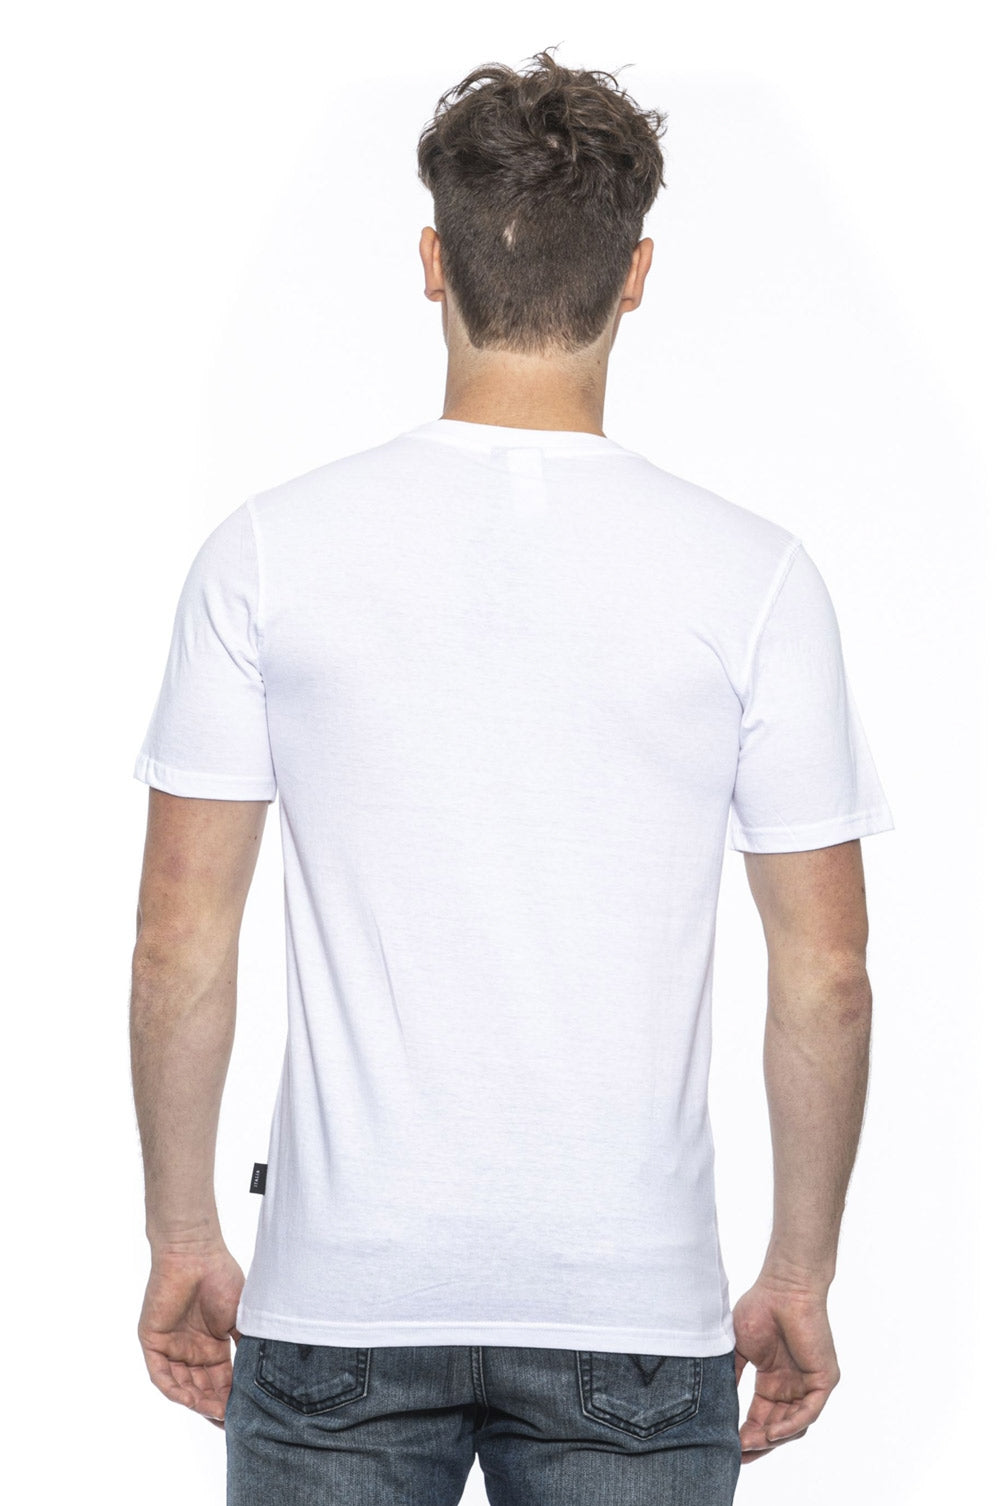 19V69 Italia Mens T-Shirt White MIKE WHITE